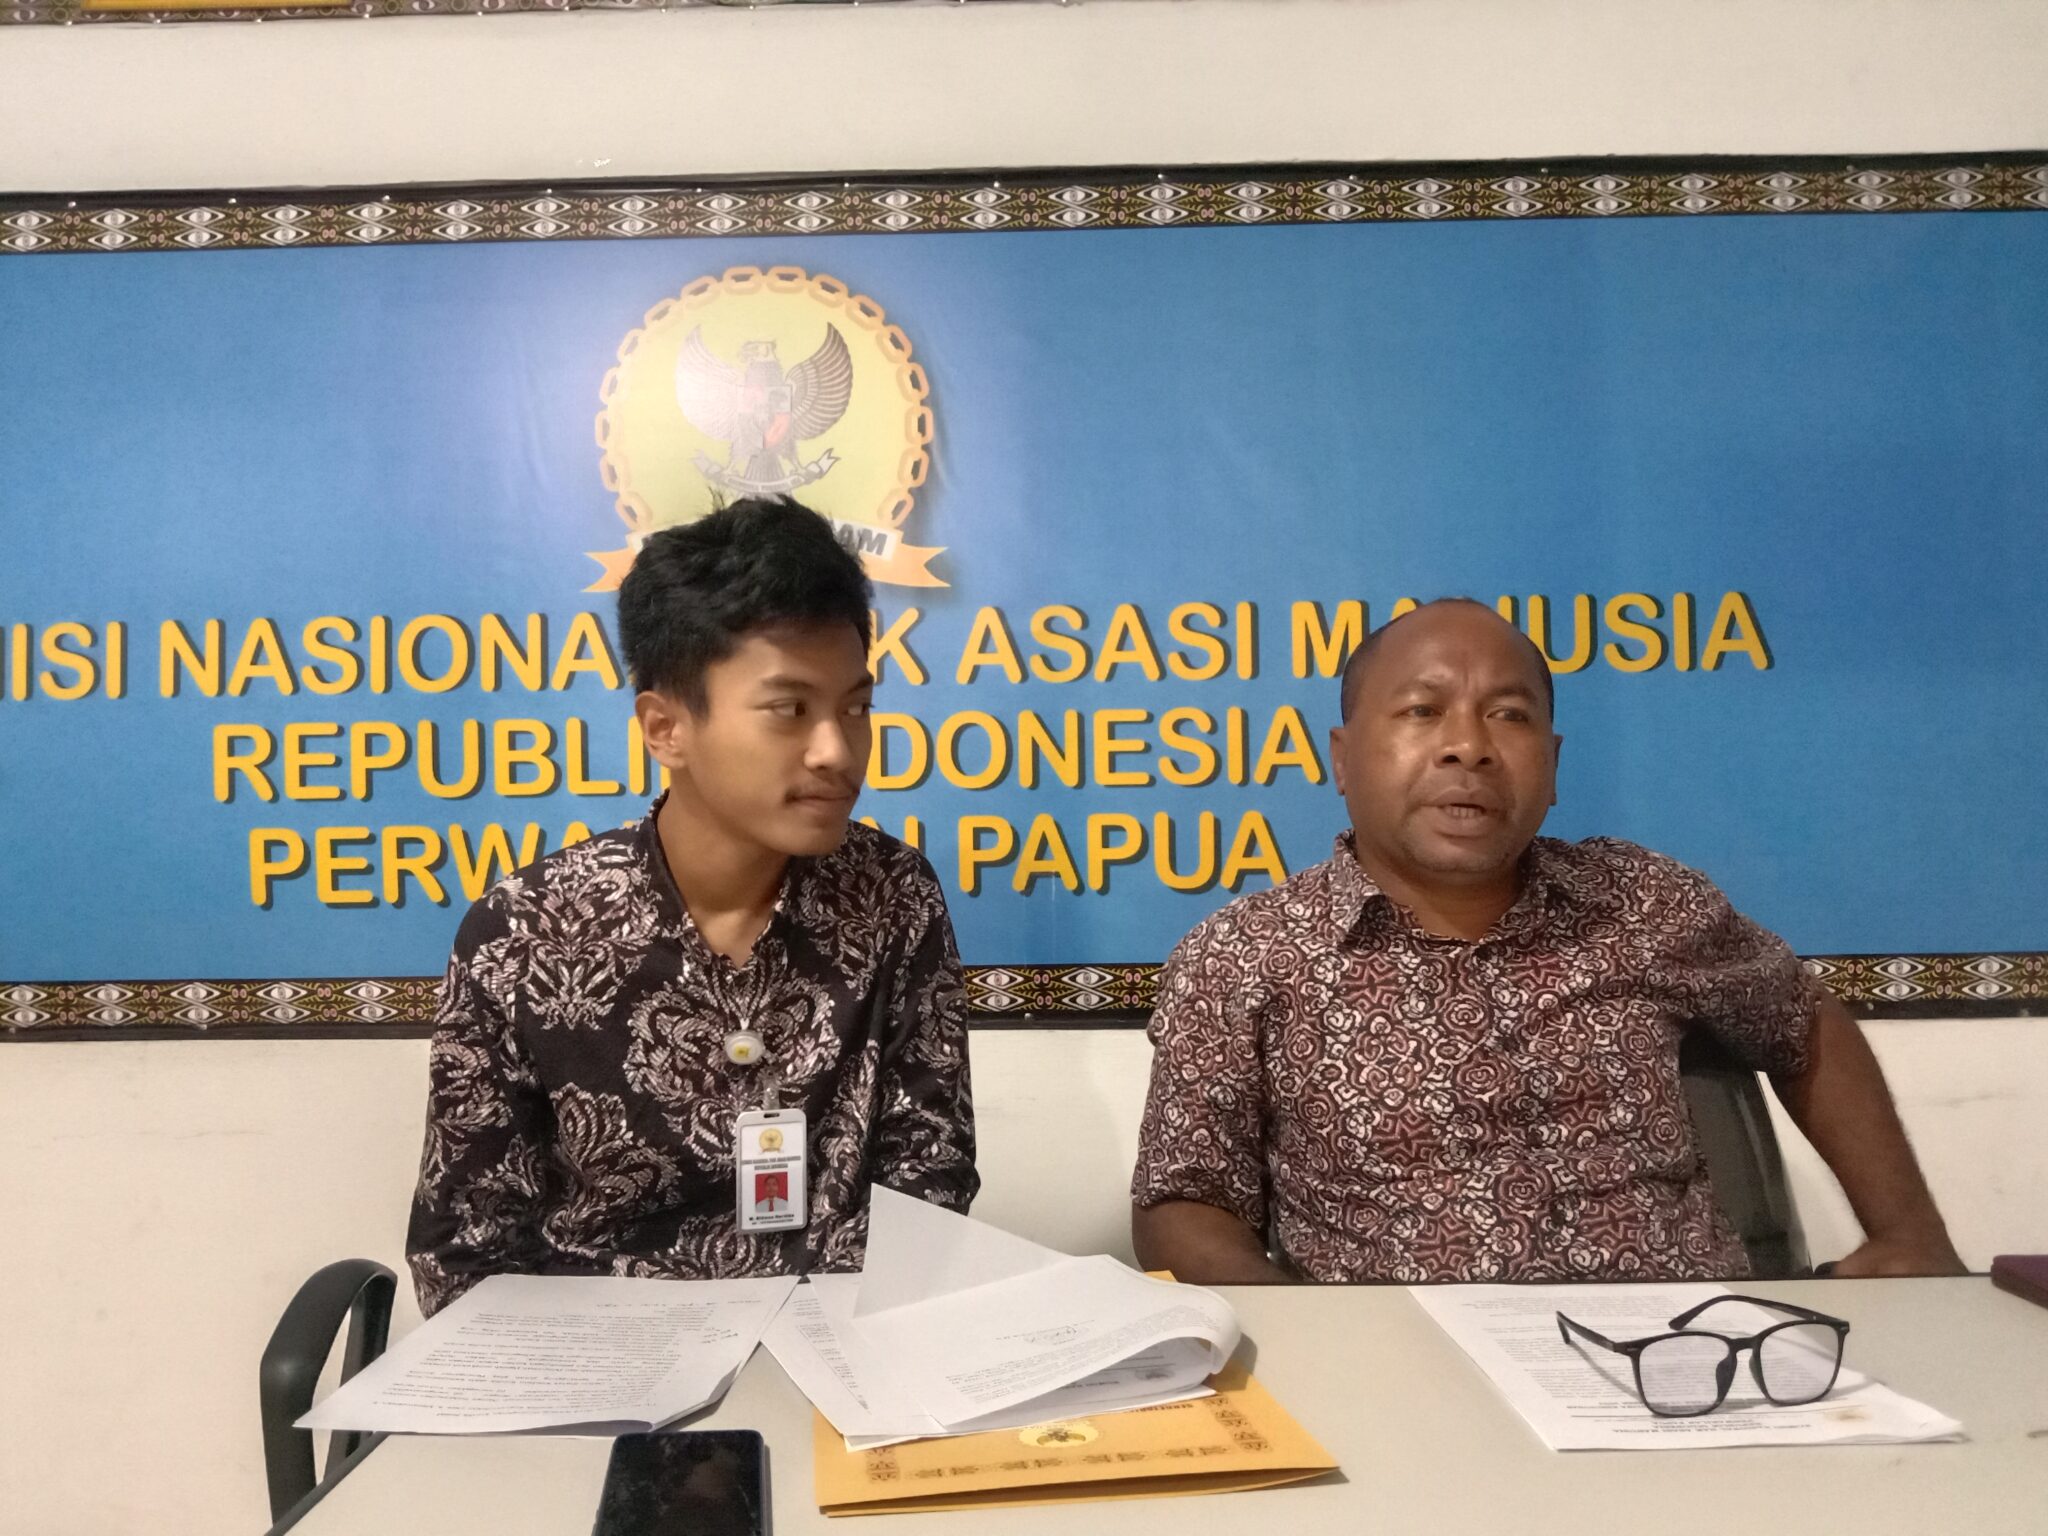 La Commission nationale des droits de l'homme de Papouasie